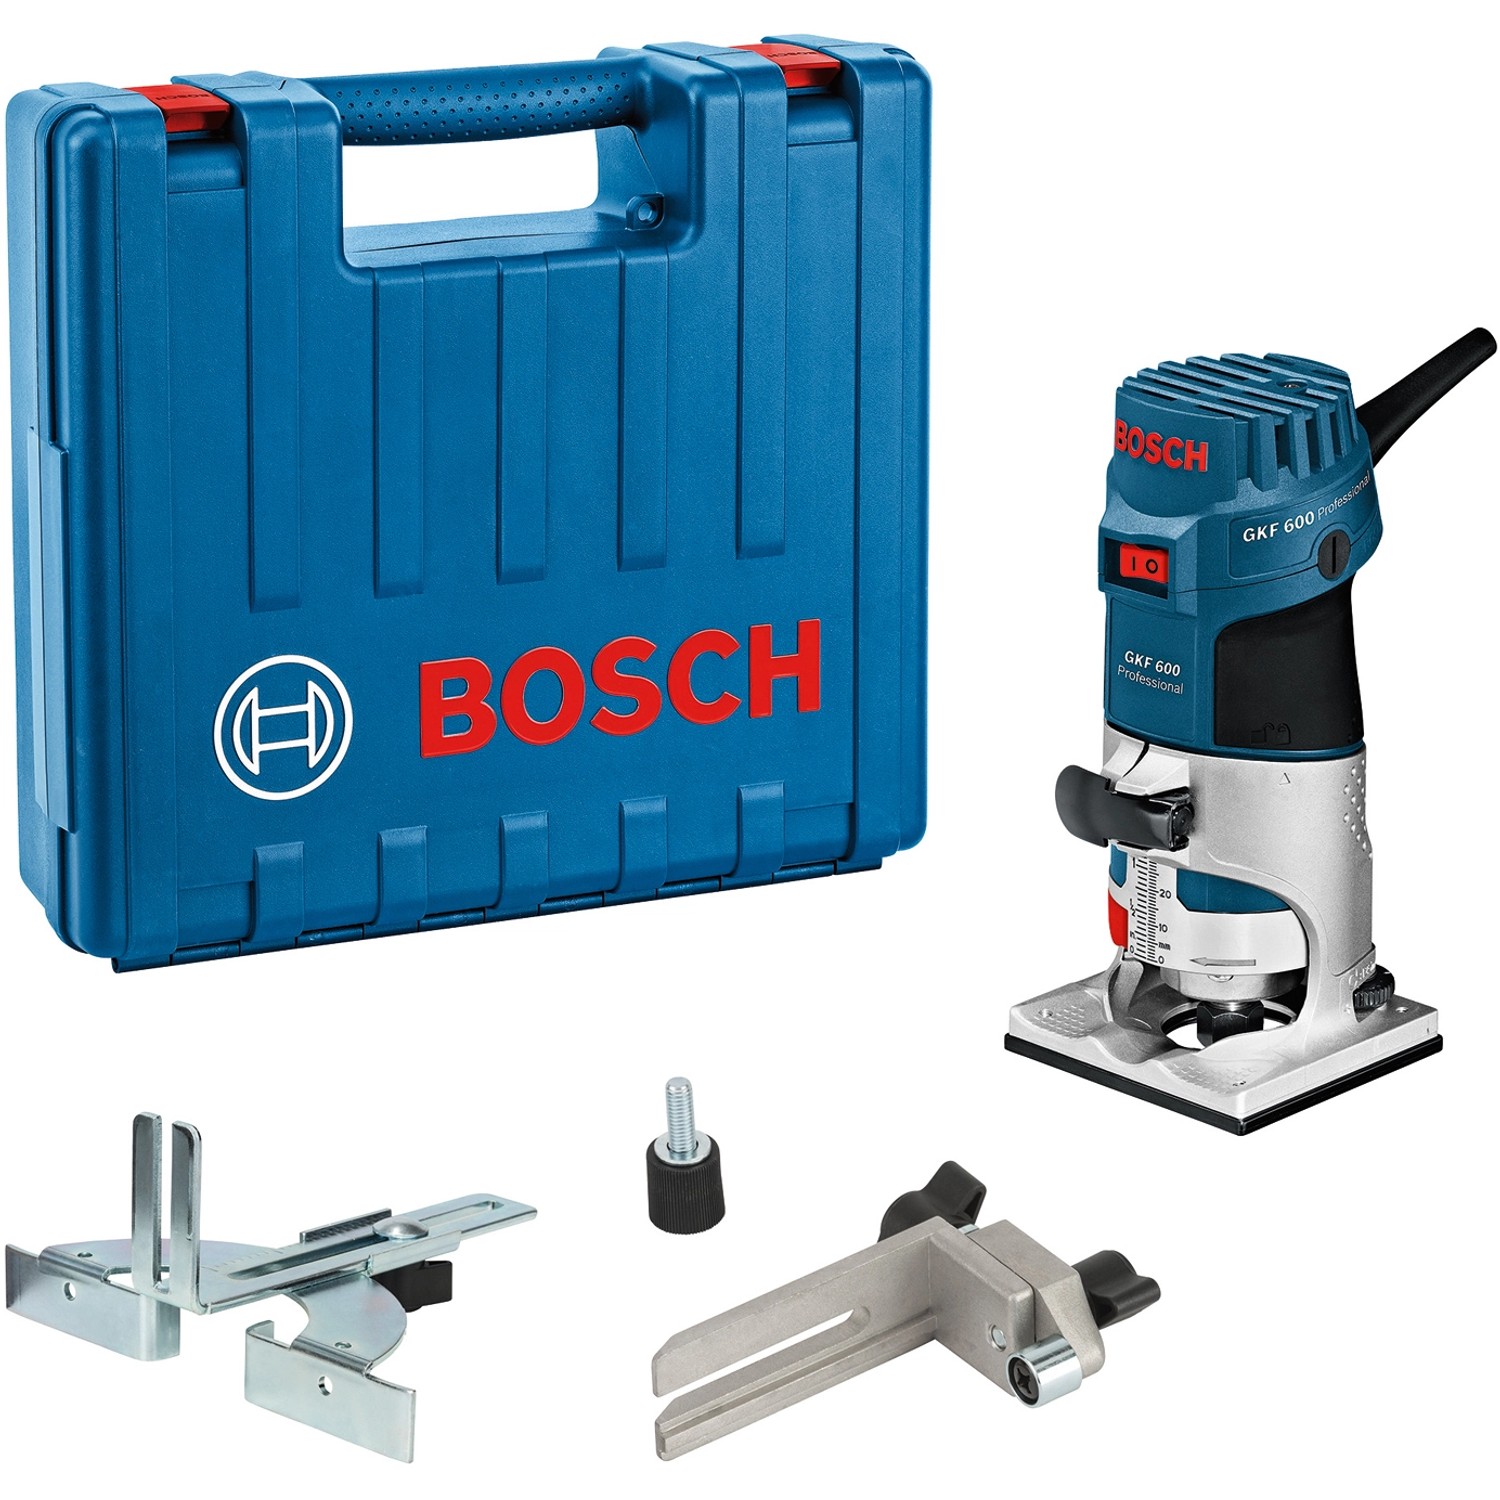 Bosch Professional Kantenfräse GKF 600 im Handwerkerkoffer günstig online kaufen